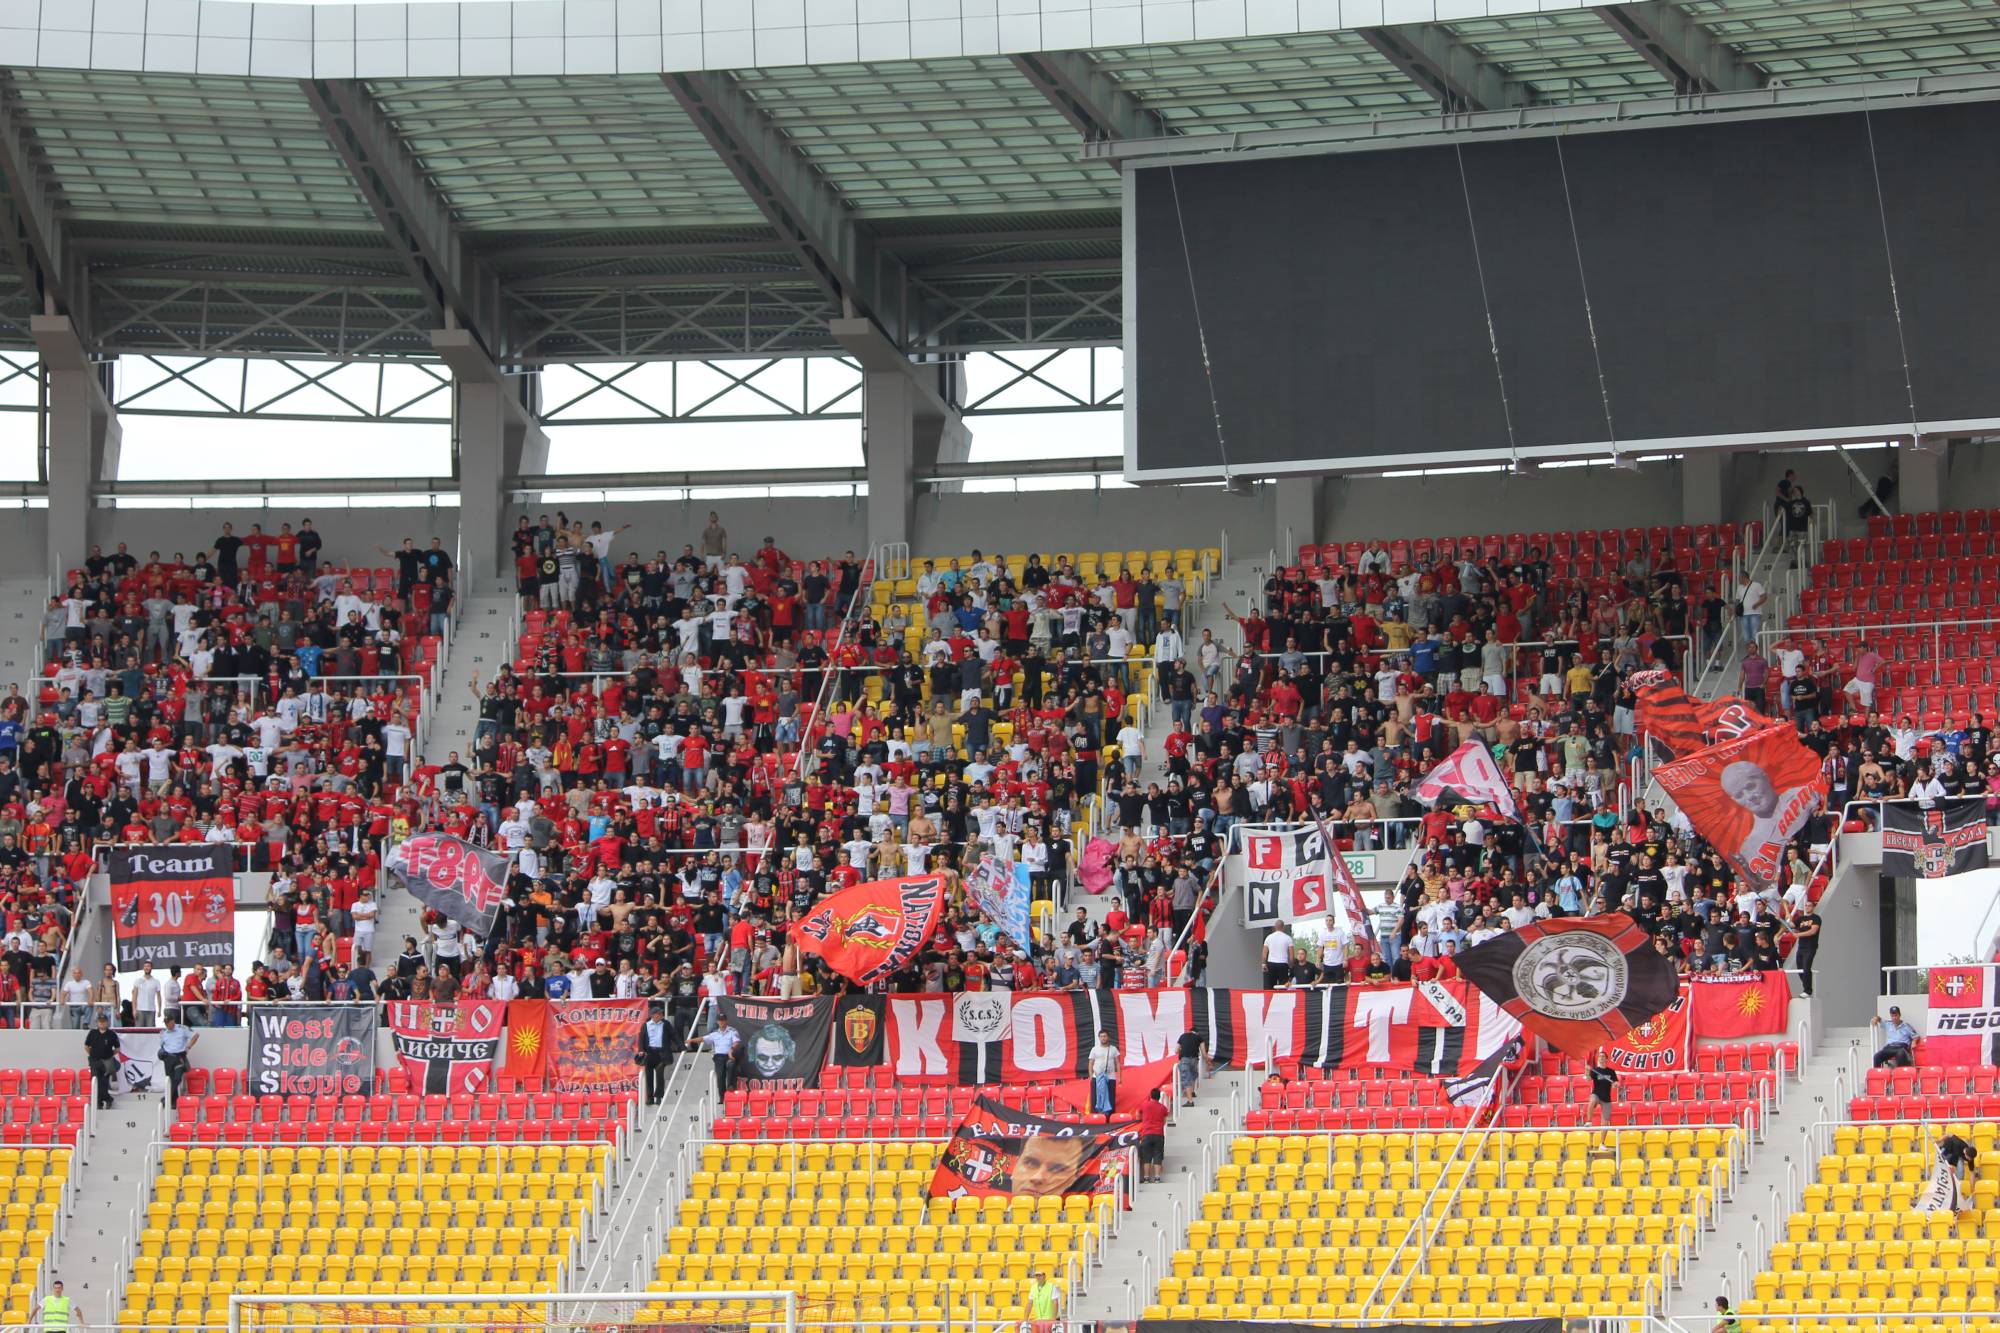 Ποδόσφαιρο: Εθνικιστικές ταραχές φοβάται η Ομοσπονδία των Σκοπίων